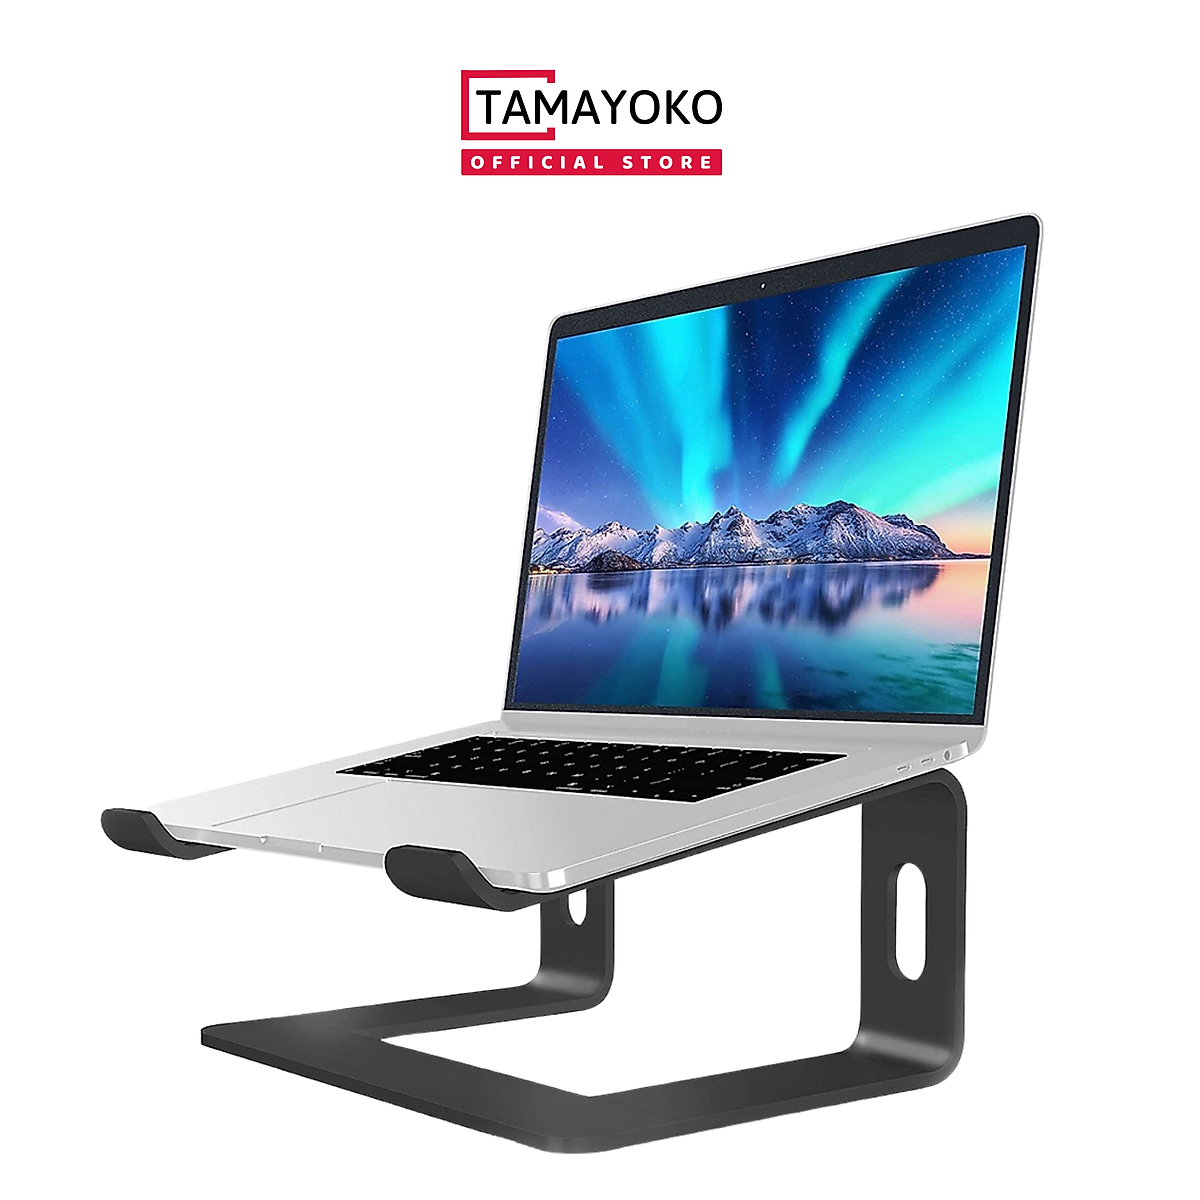 Giá Đỡ Máy Tính Laptop Macbook Hợp Kim Nhôm Cao Cấp Model FS089- Hàng Chính Hãng Tamayoko